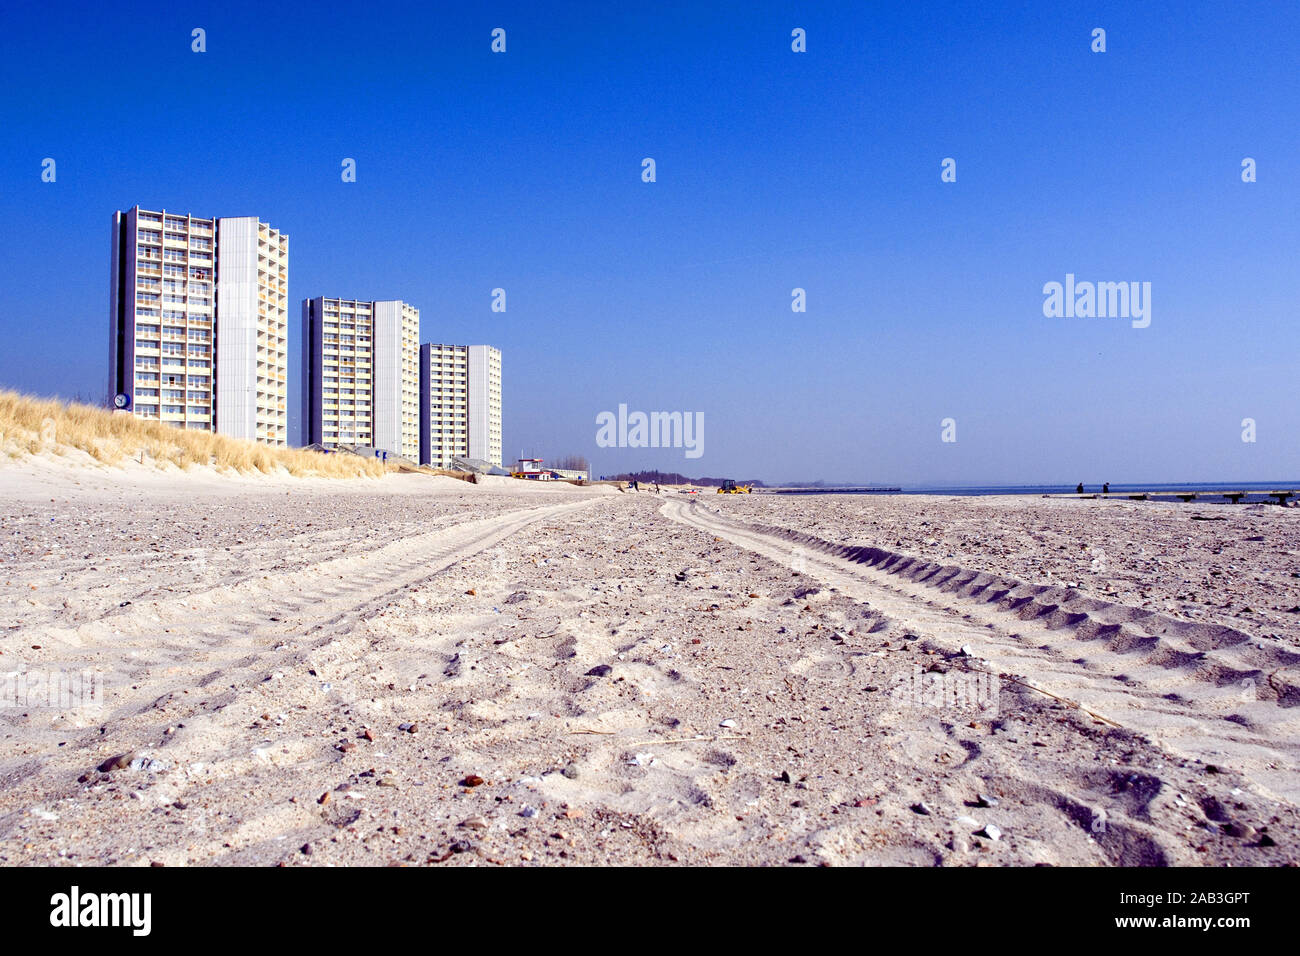 Ferienwohnungen am Strand von Fehmarn Stock Photo